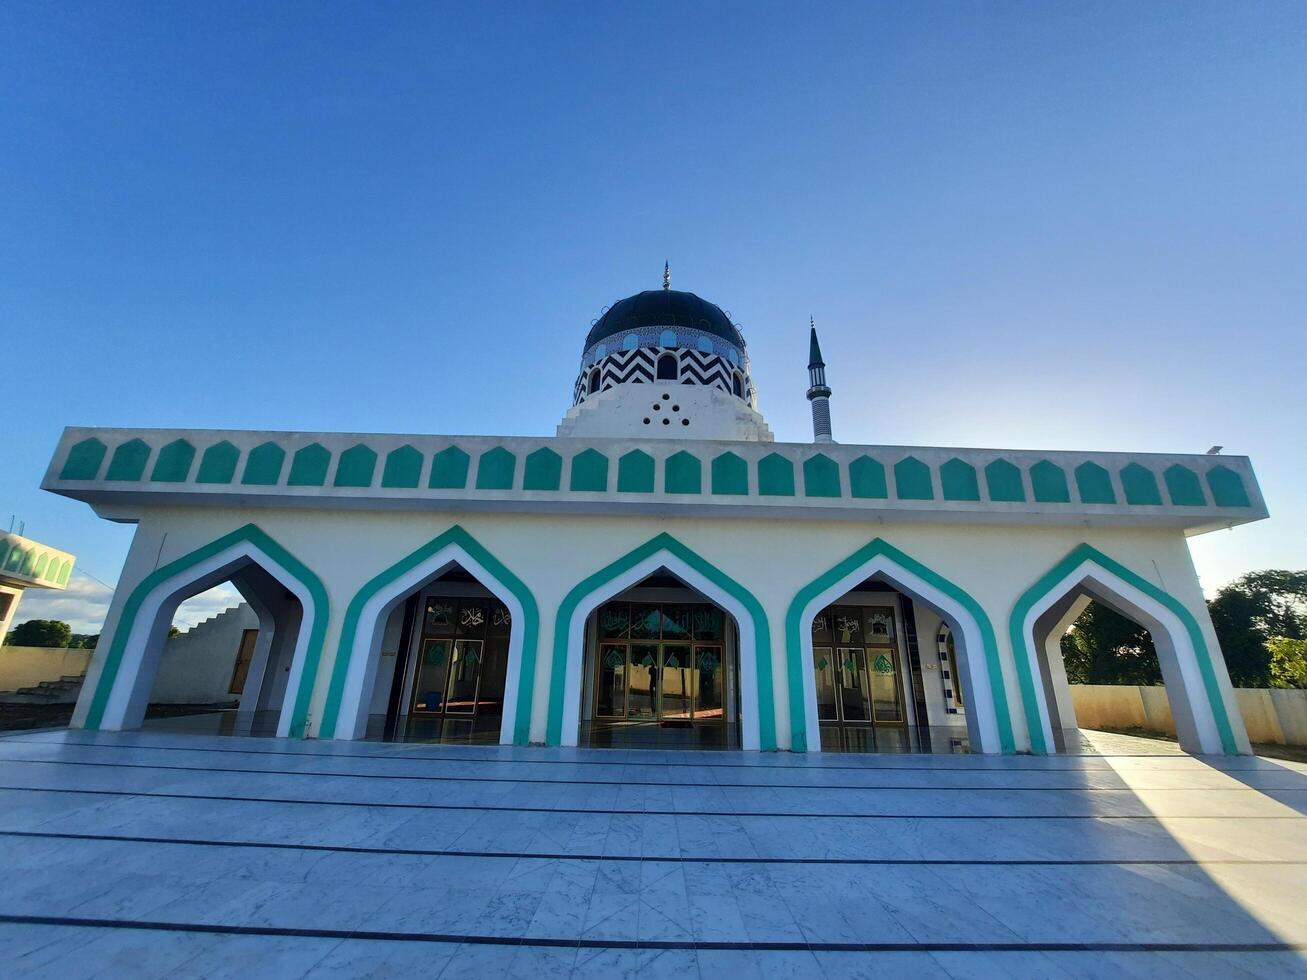 schön Moschee im das Welt, Neu Moschee tolle die Architektur Design großartig Aussicht foto